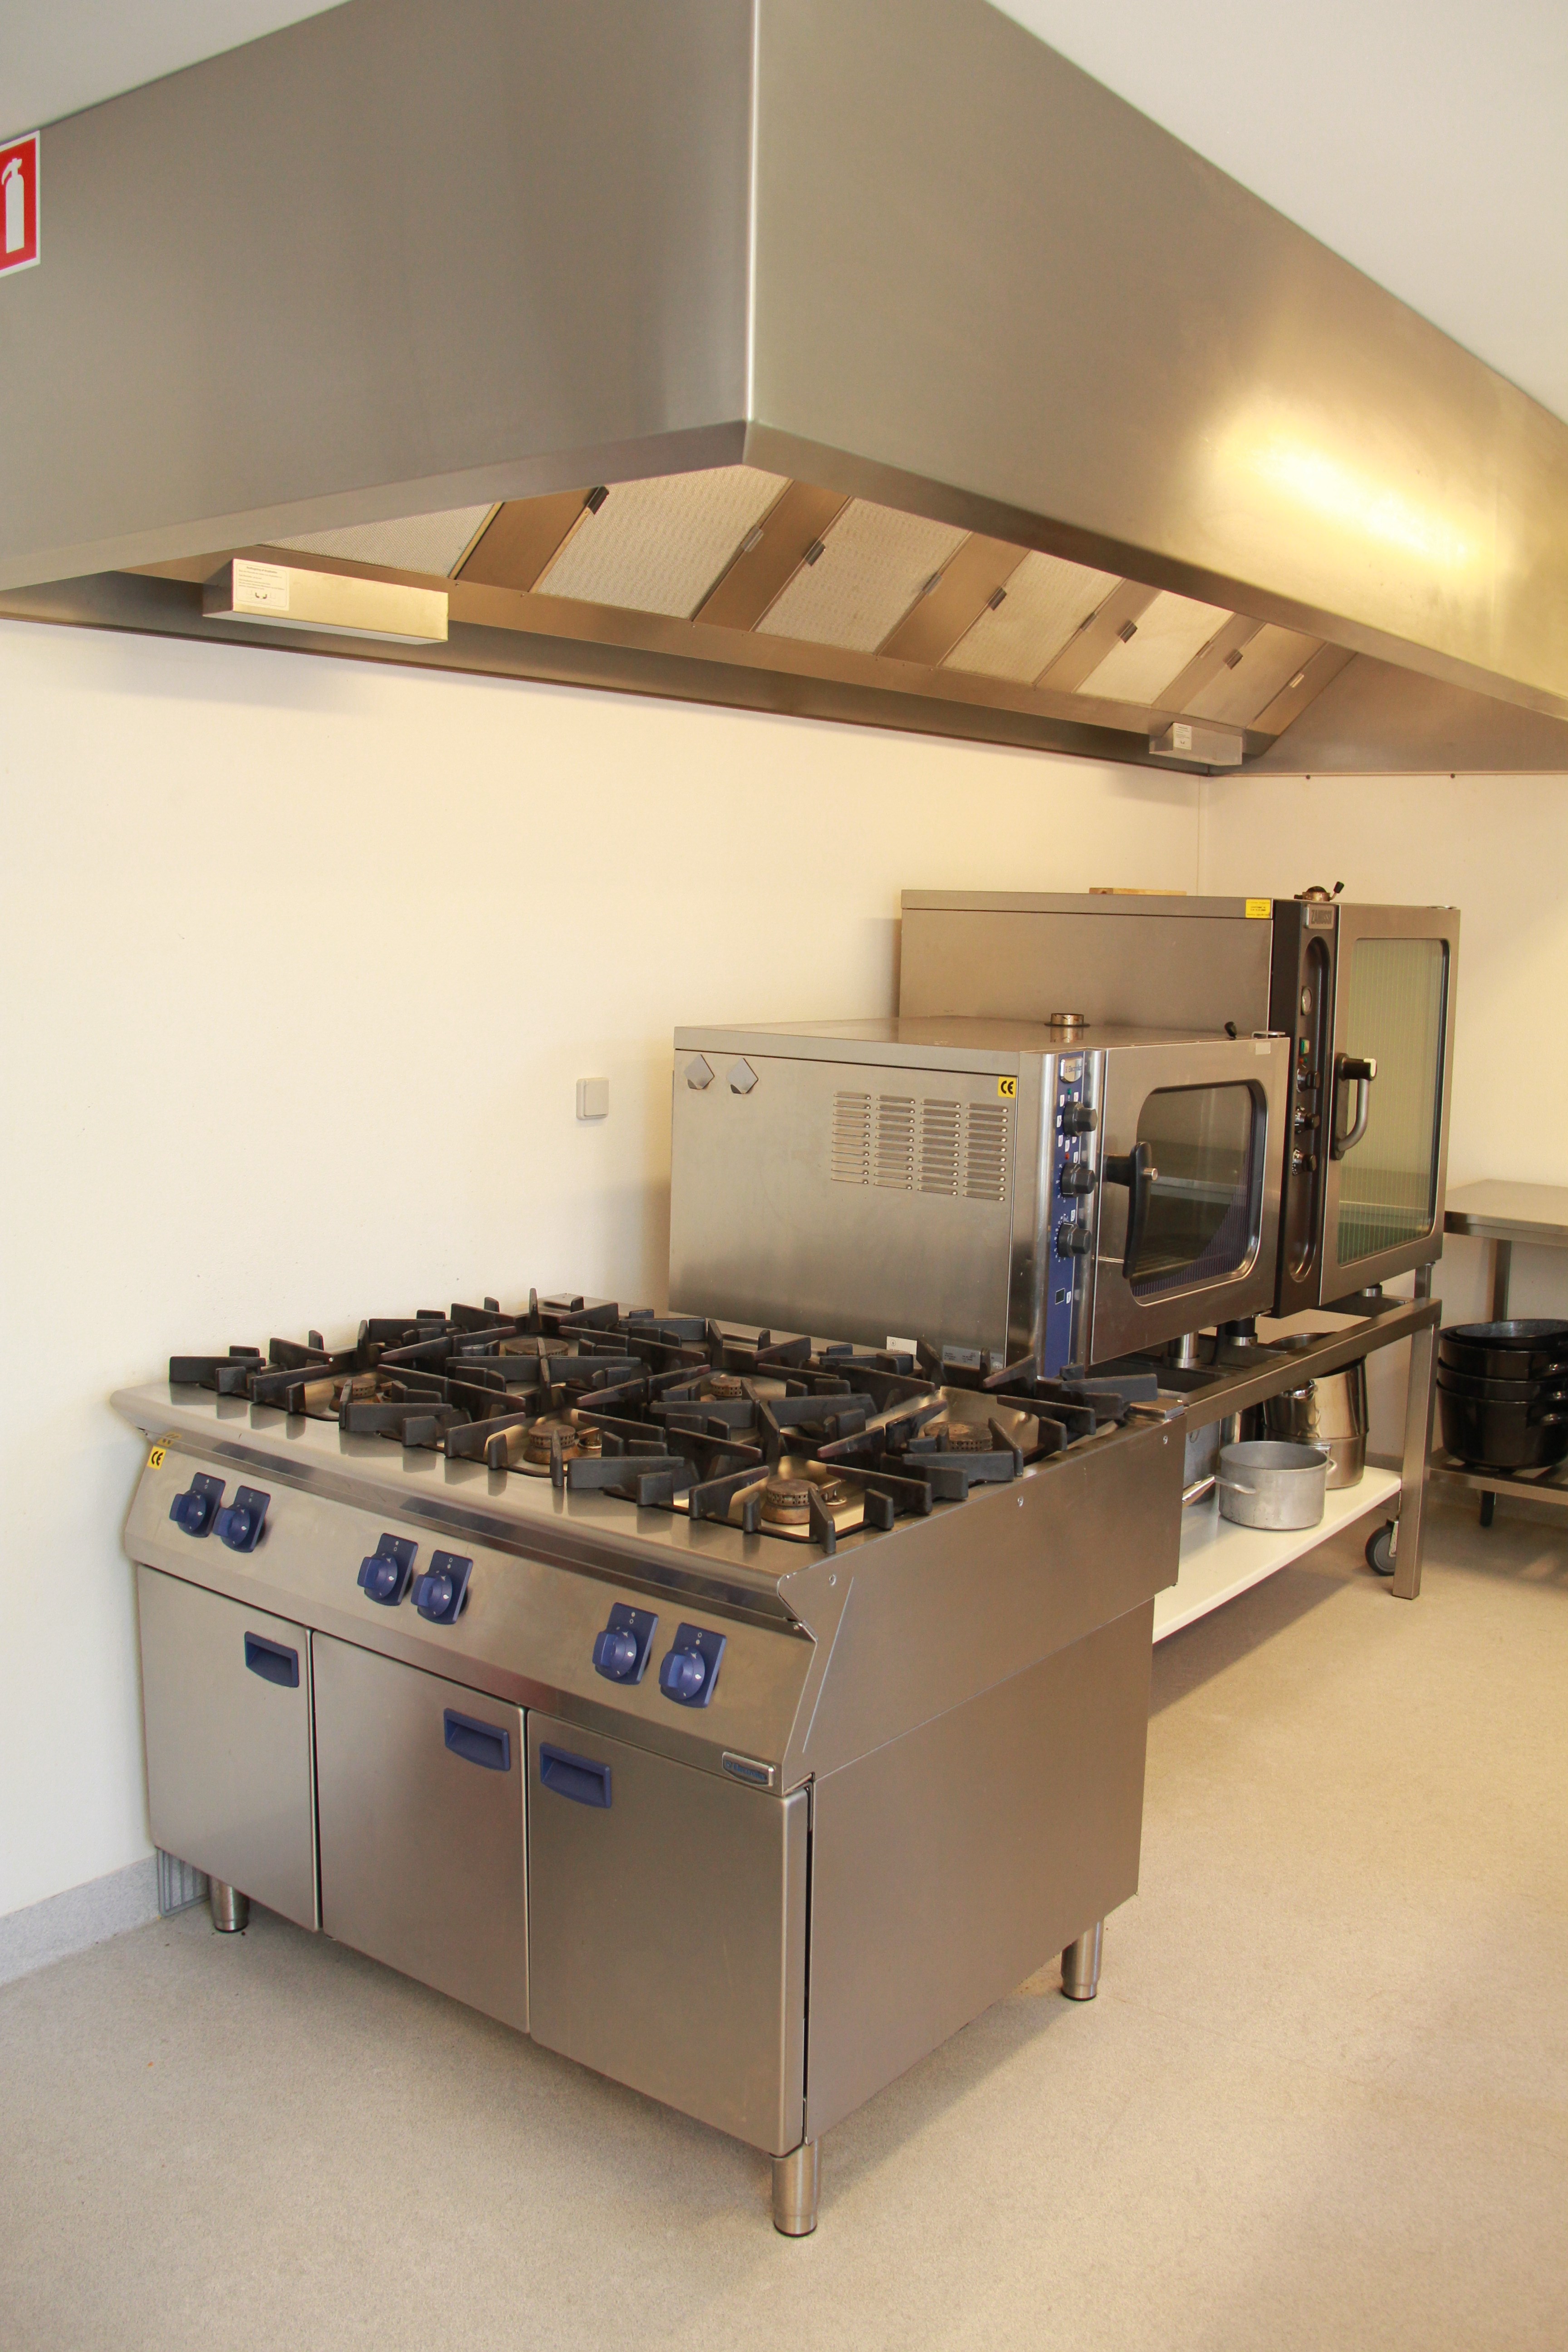 Vores køkken er udstyret med professionelt køkkenudstyr.